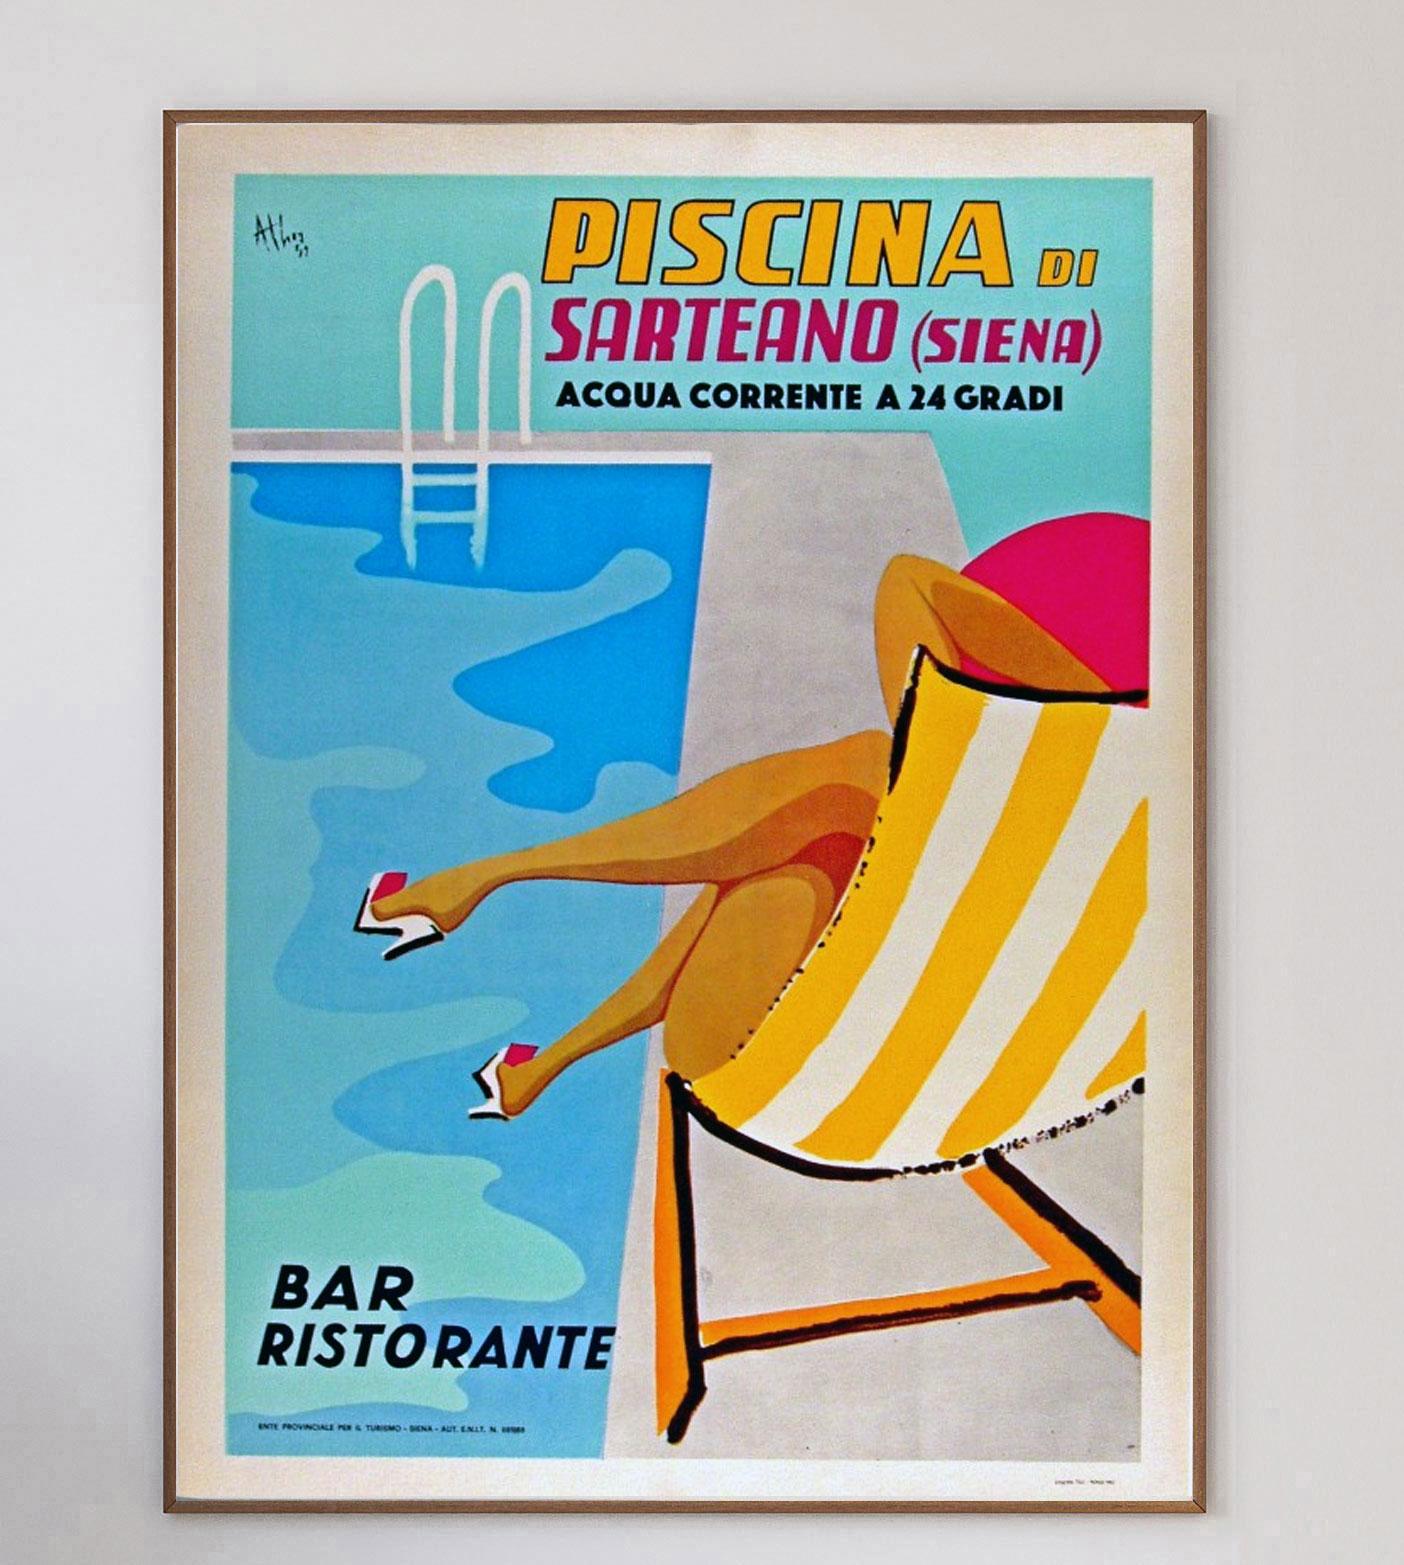 Ein beeindruckendes Plakat, das 1962 von Athoy entworfen wurde, um für ein öffentliches Schwimmbad in Sarteano, Siena in Italien zu werben. Die prächtigen Kunstwerke aus der Mitte des Jahrhunderts versetzen Sie in die sonnenverwöhnte Ära der frühen